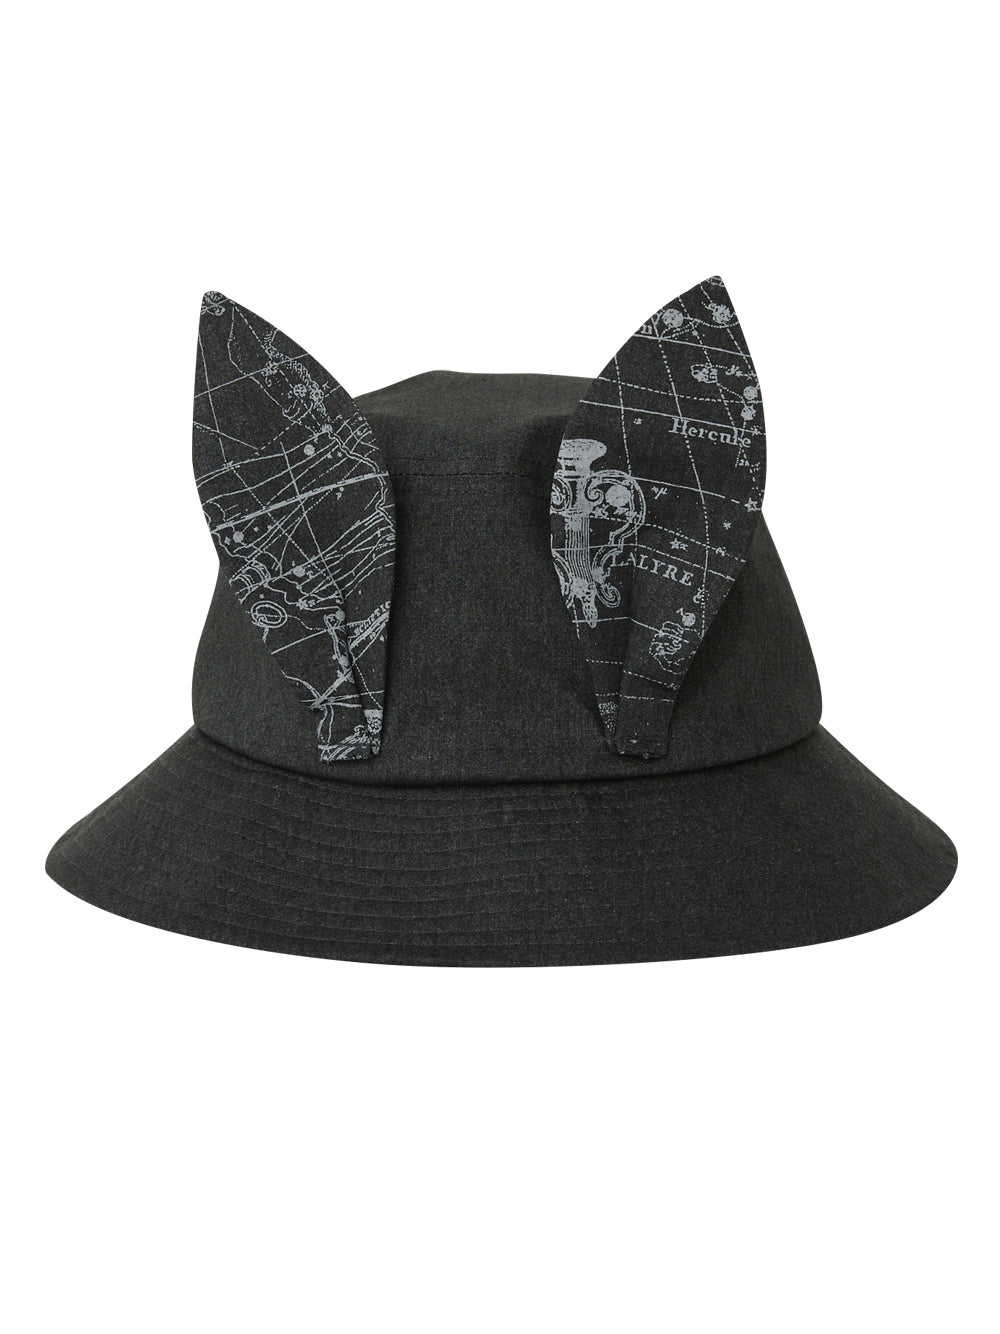 Noctua Black Beast Bucket Hat